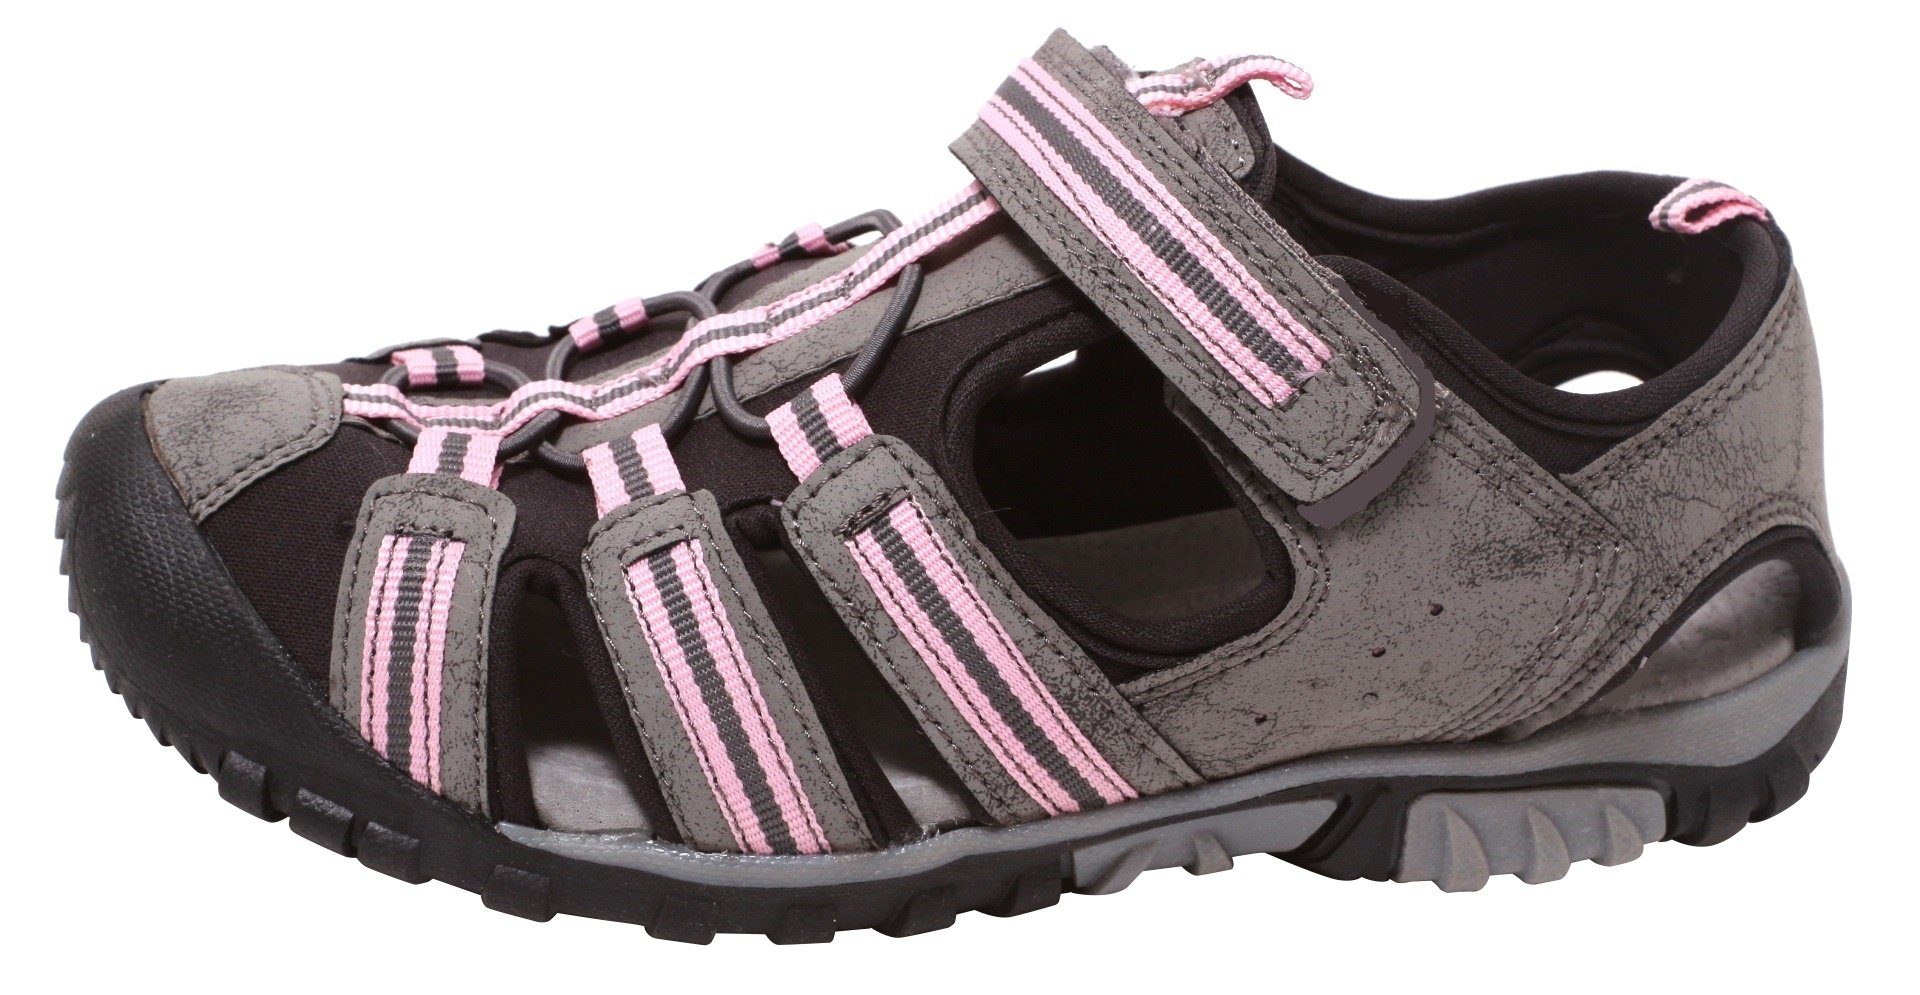 Sport Zapato Sommersandale Outdoorsandale 29-34 Outdoor Sandale Mädchen Trekking Schuhe rosa Gr Kinder